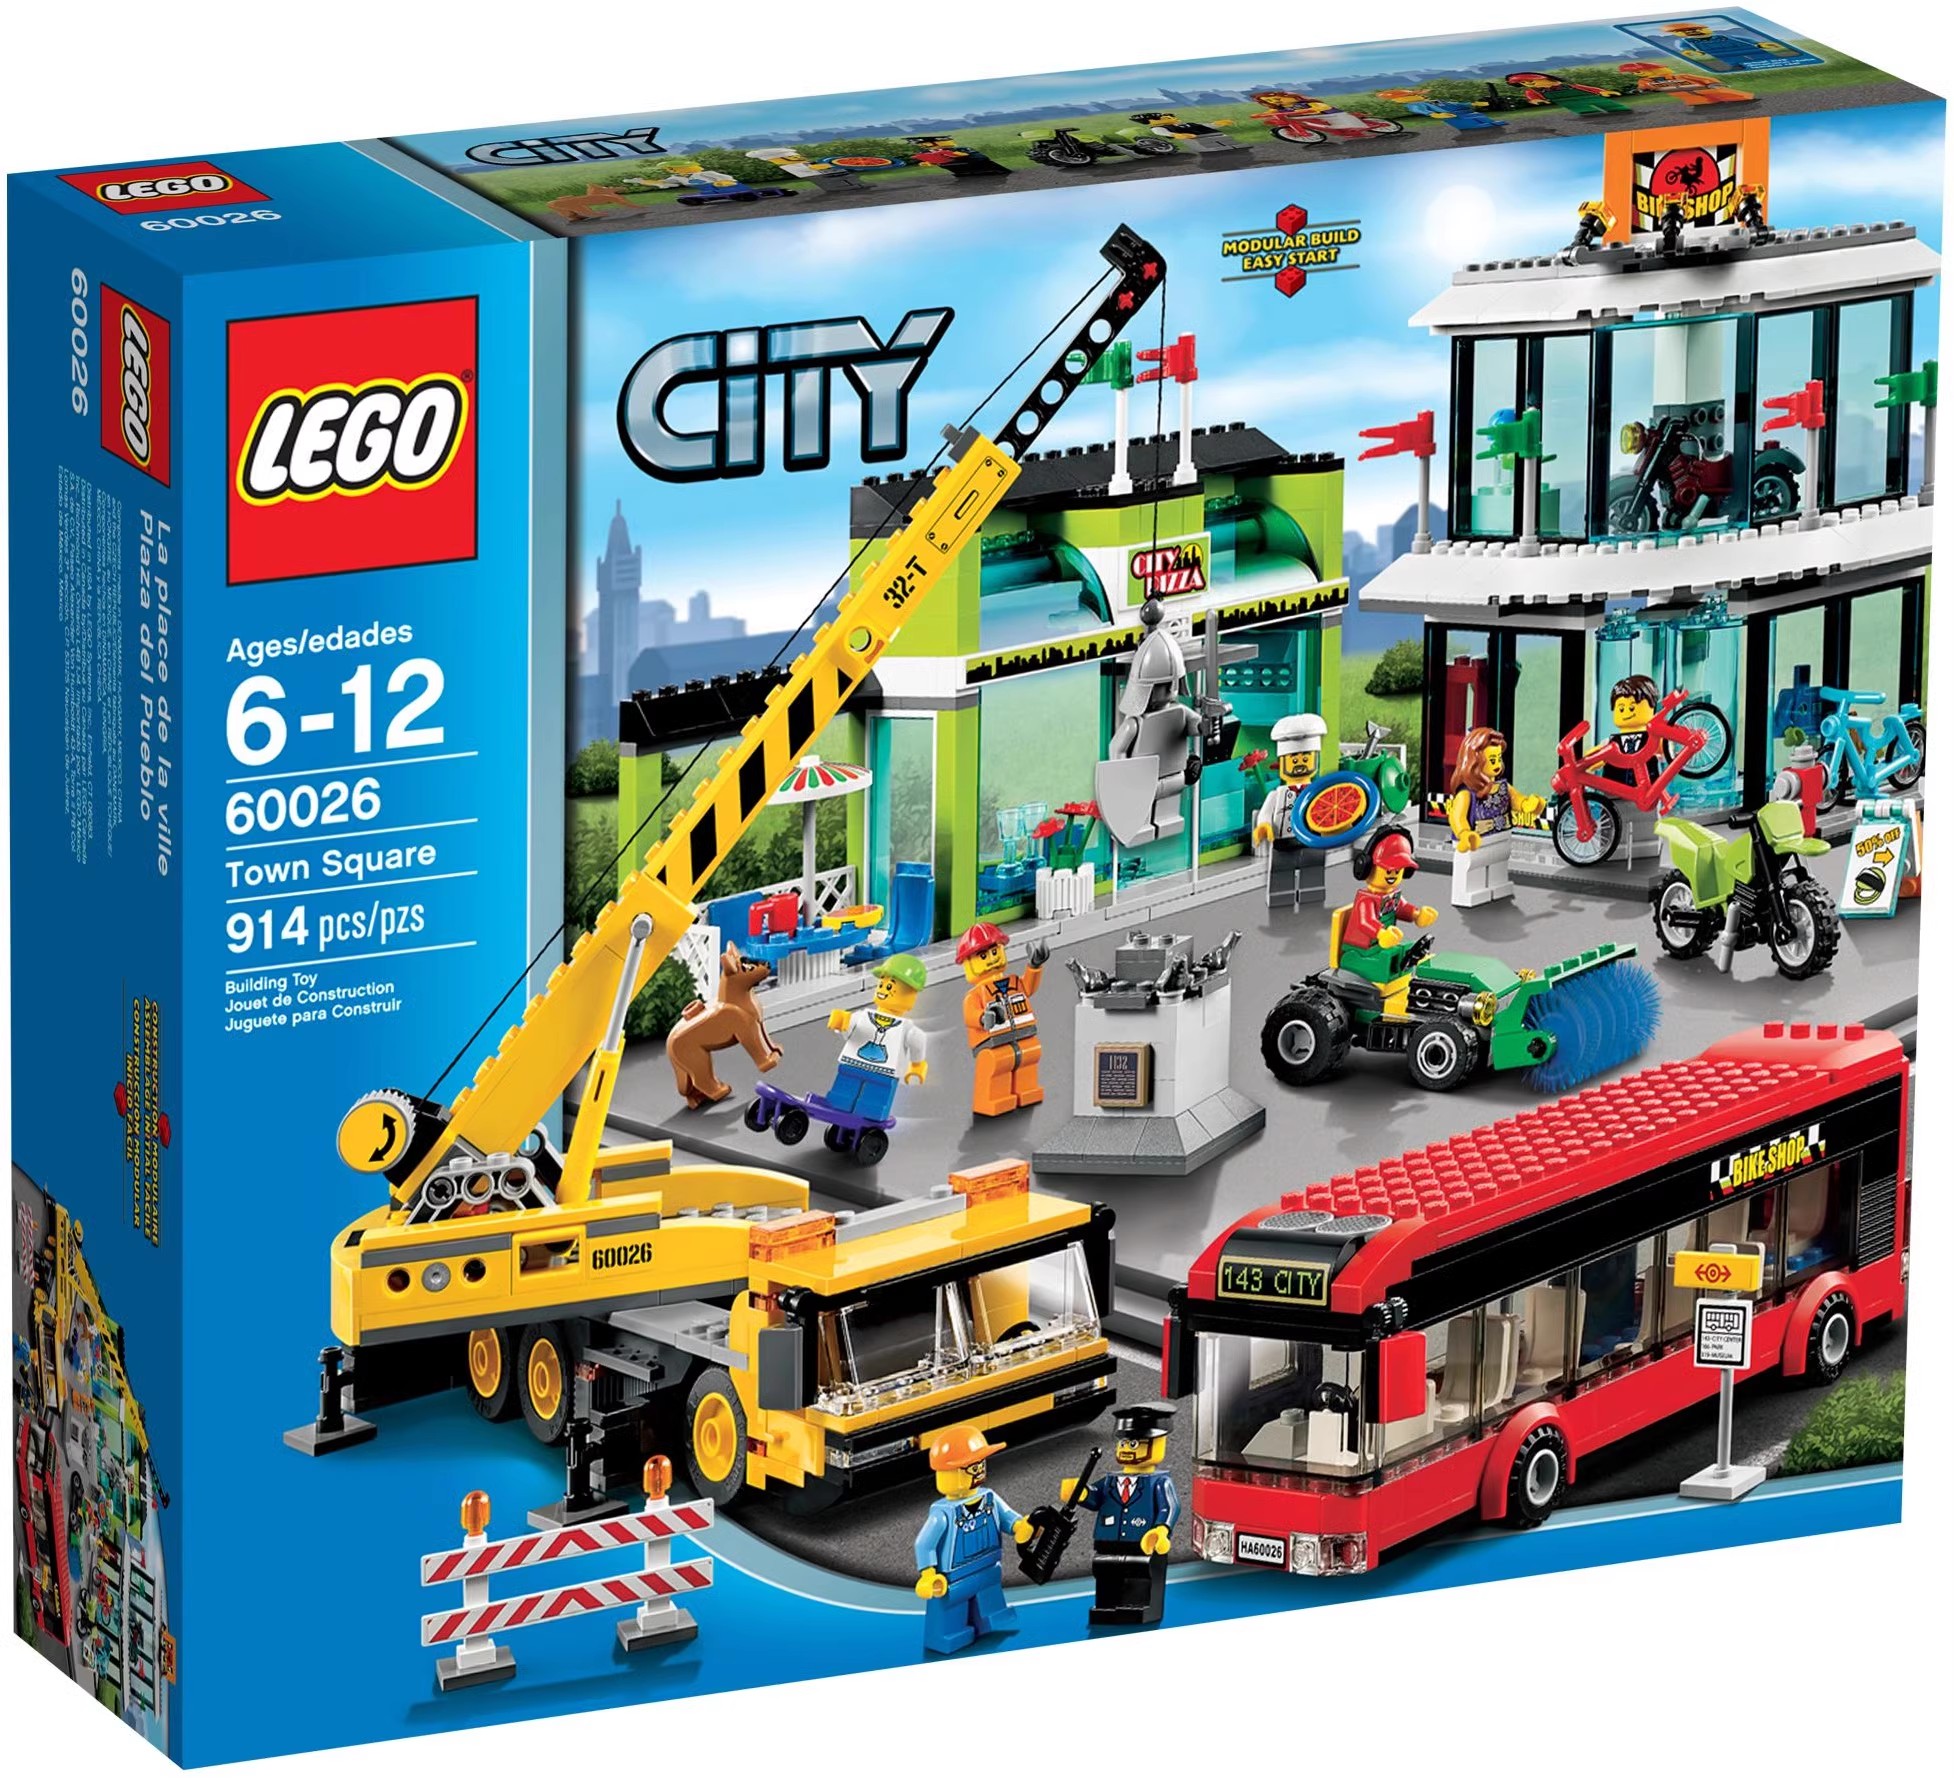 绝版正品 LEGO CITY 乐高拼搭积木玩具 城市系列 市镇广场 60026 玩具/童车/益智/积木/模型 普通塑料积木 原图主图